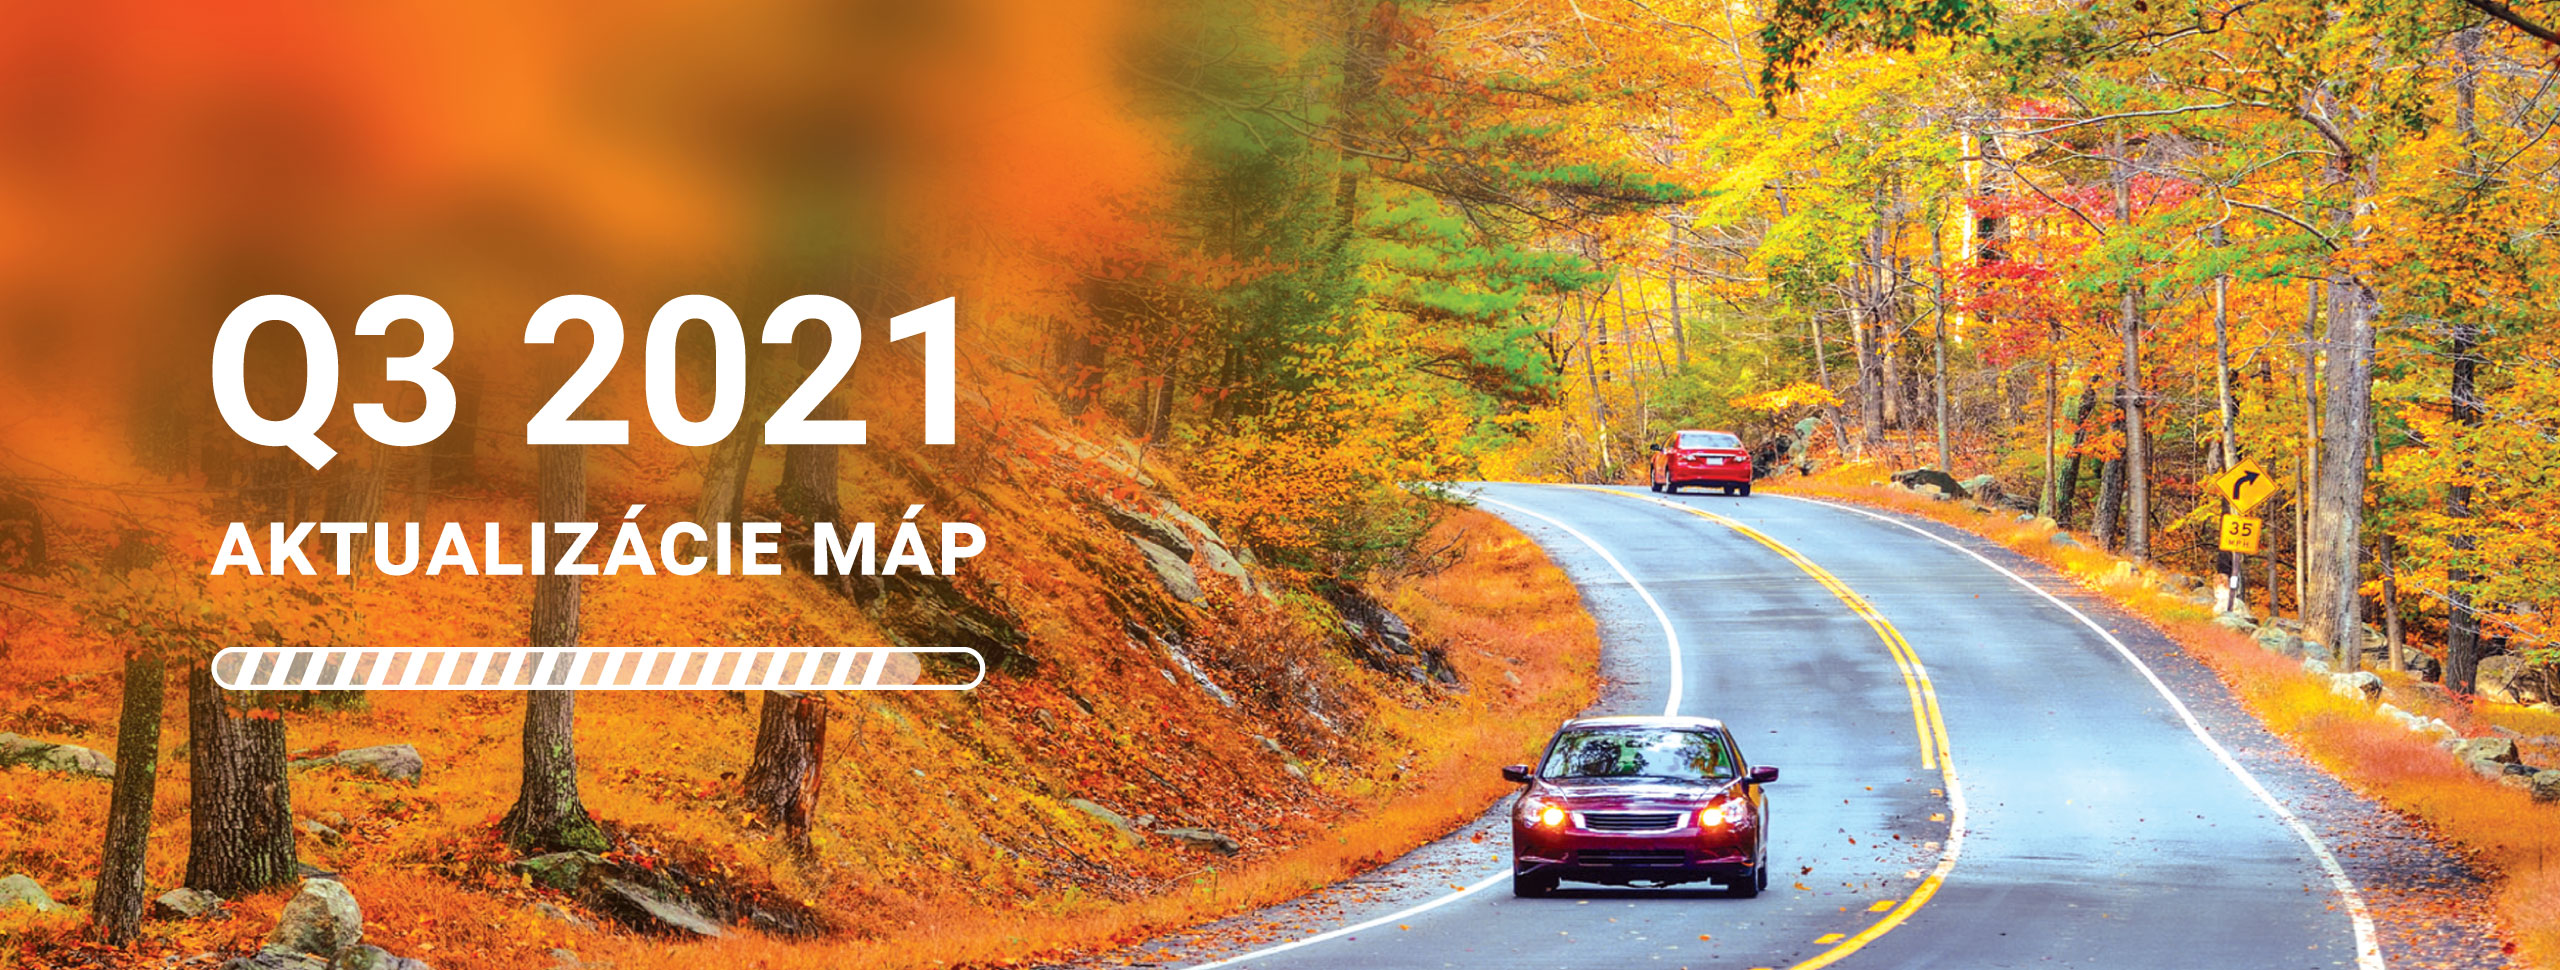 NAVITEL® vydáva aktualizáciu pre všetky mapy - verzia Q3 2021!